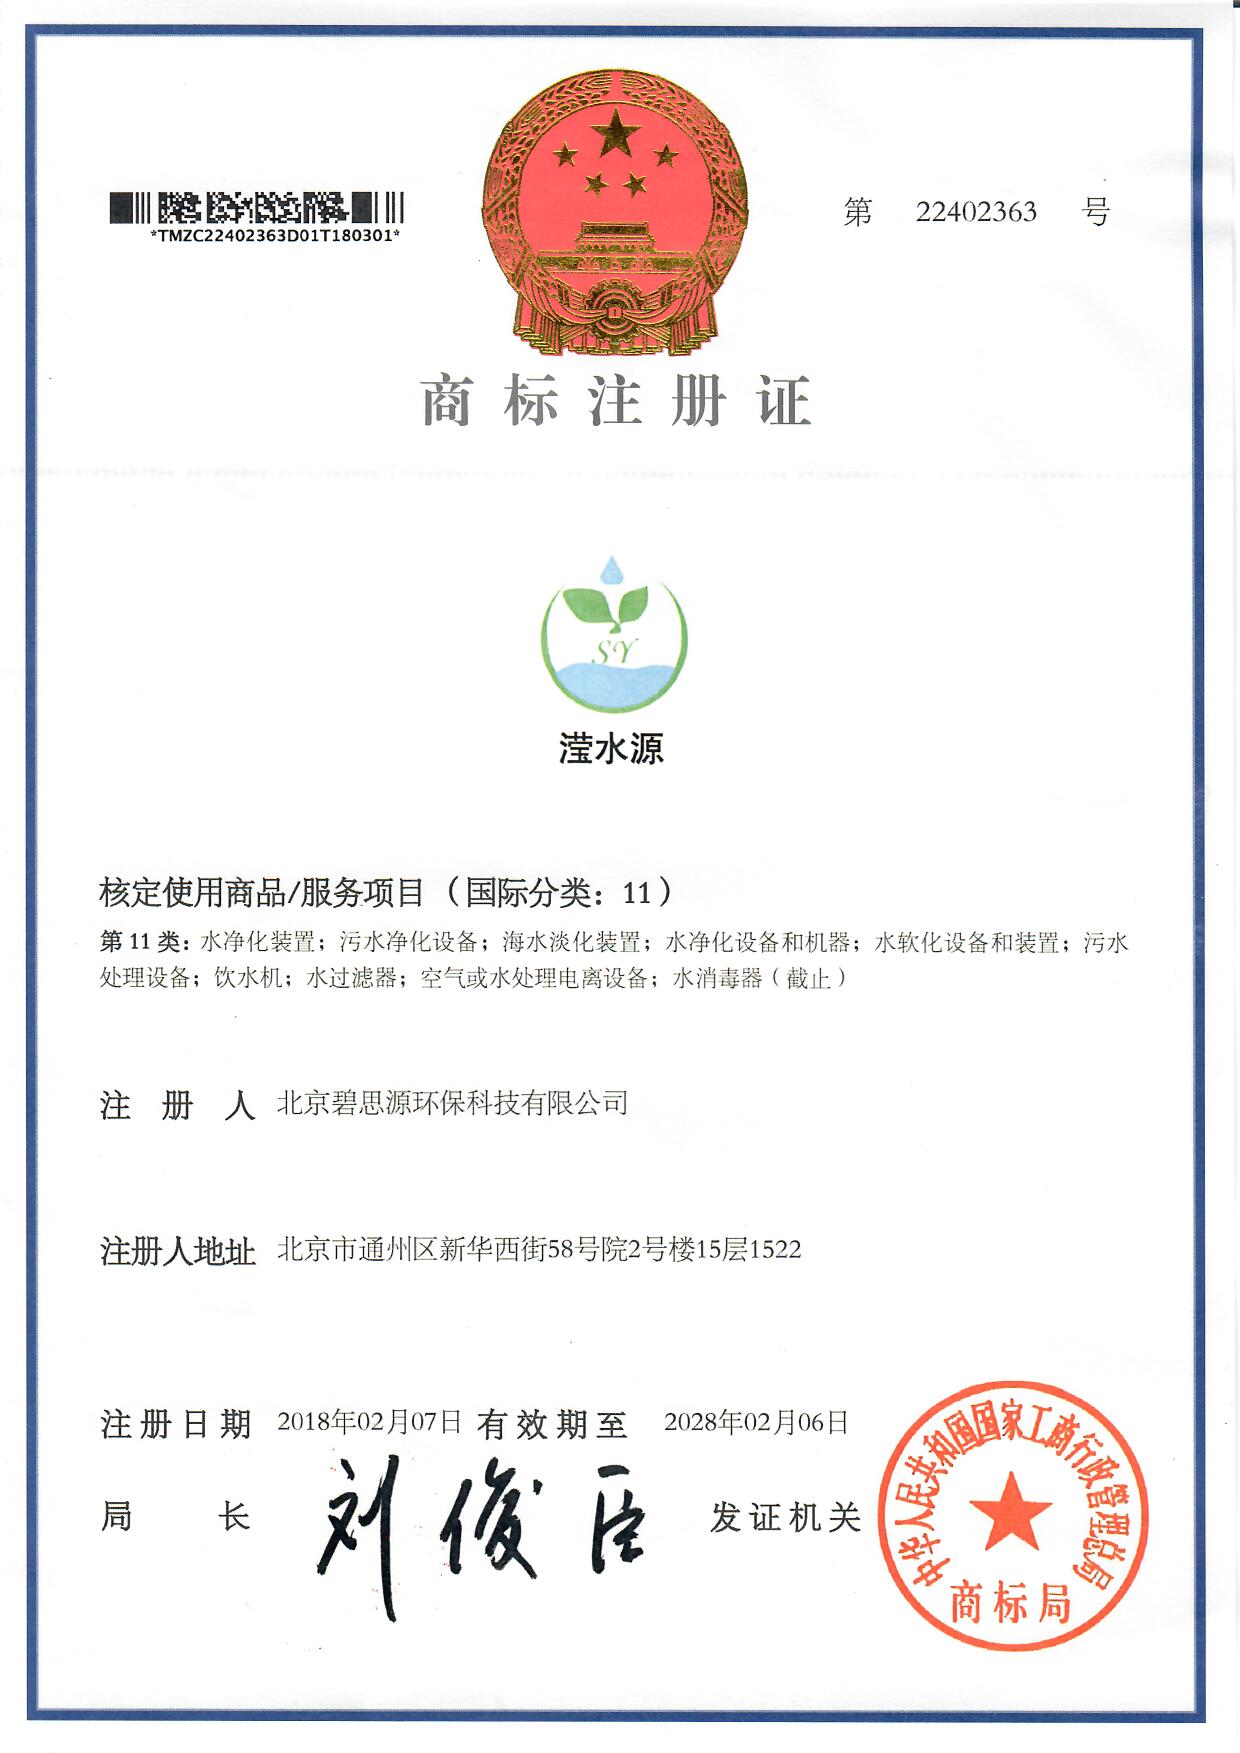 2018年2月7日我公司取得滢水源商标注册证